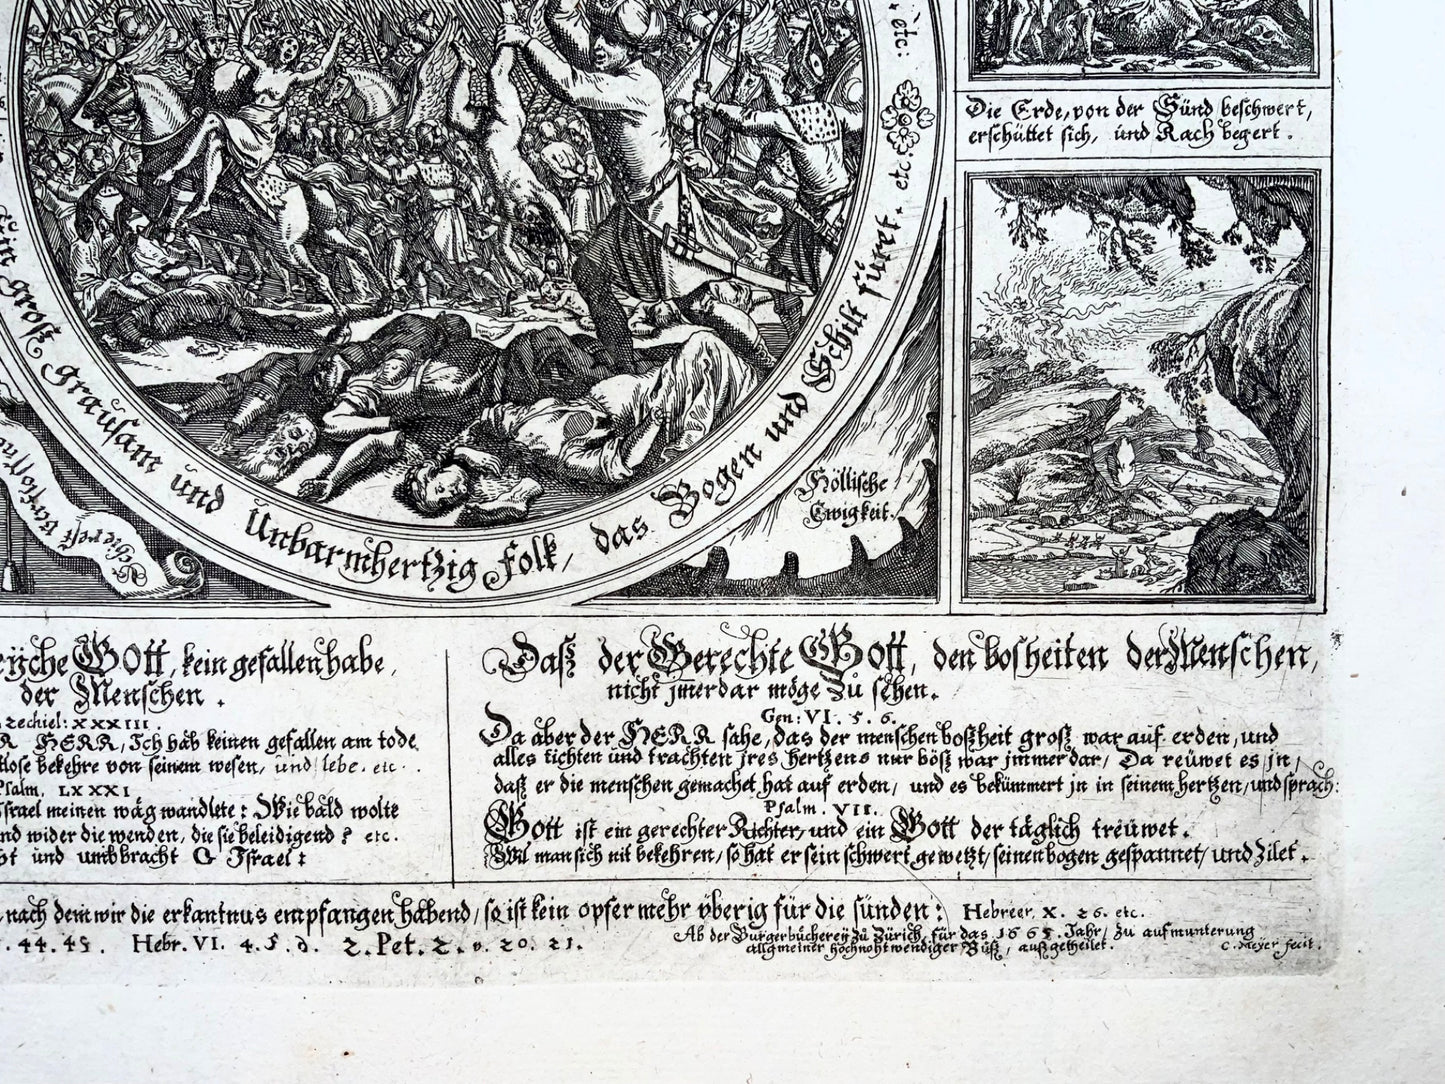 1665 Broadside, Conrad Meyer, « Türkischer Jamerspiegel » Guerres turques ottomanes